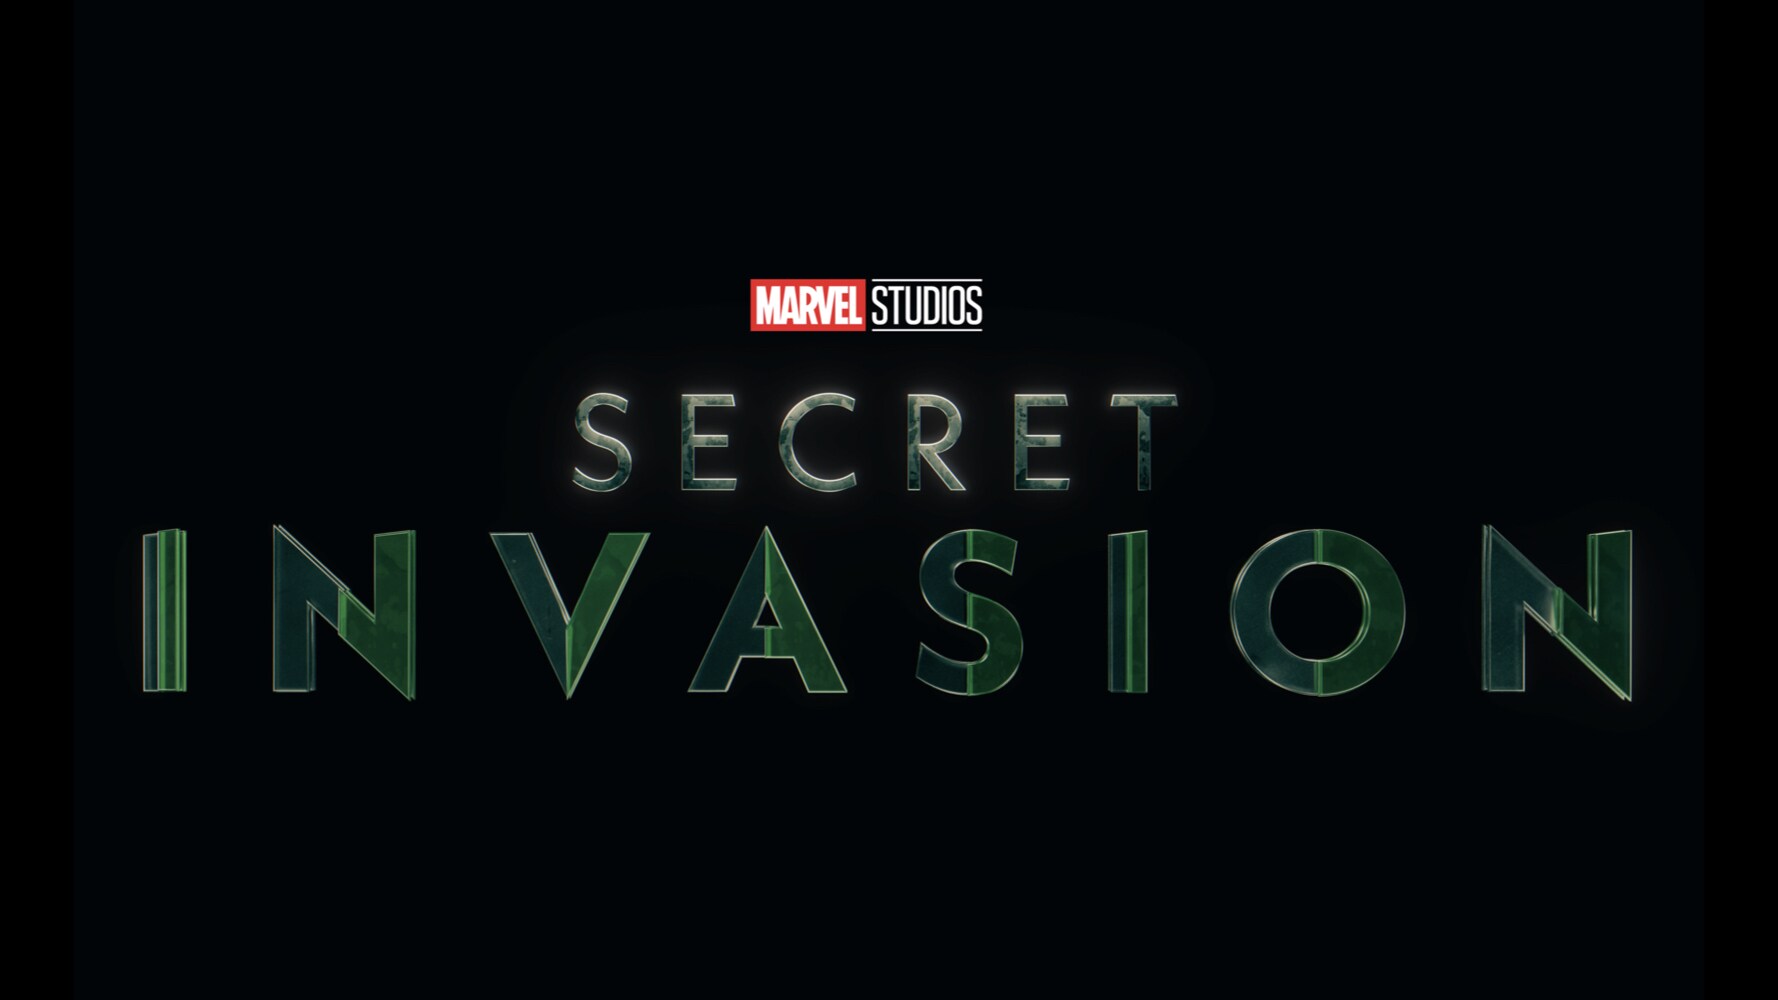 Skrull Kids — Secret Invasion's “Home”